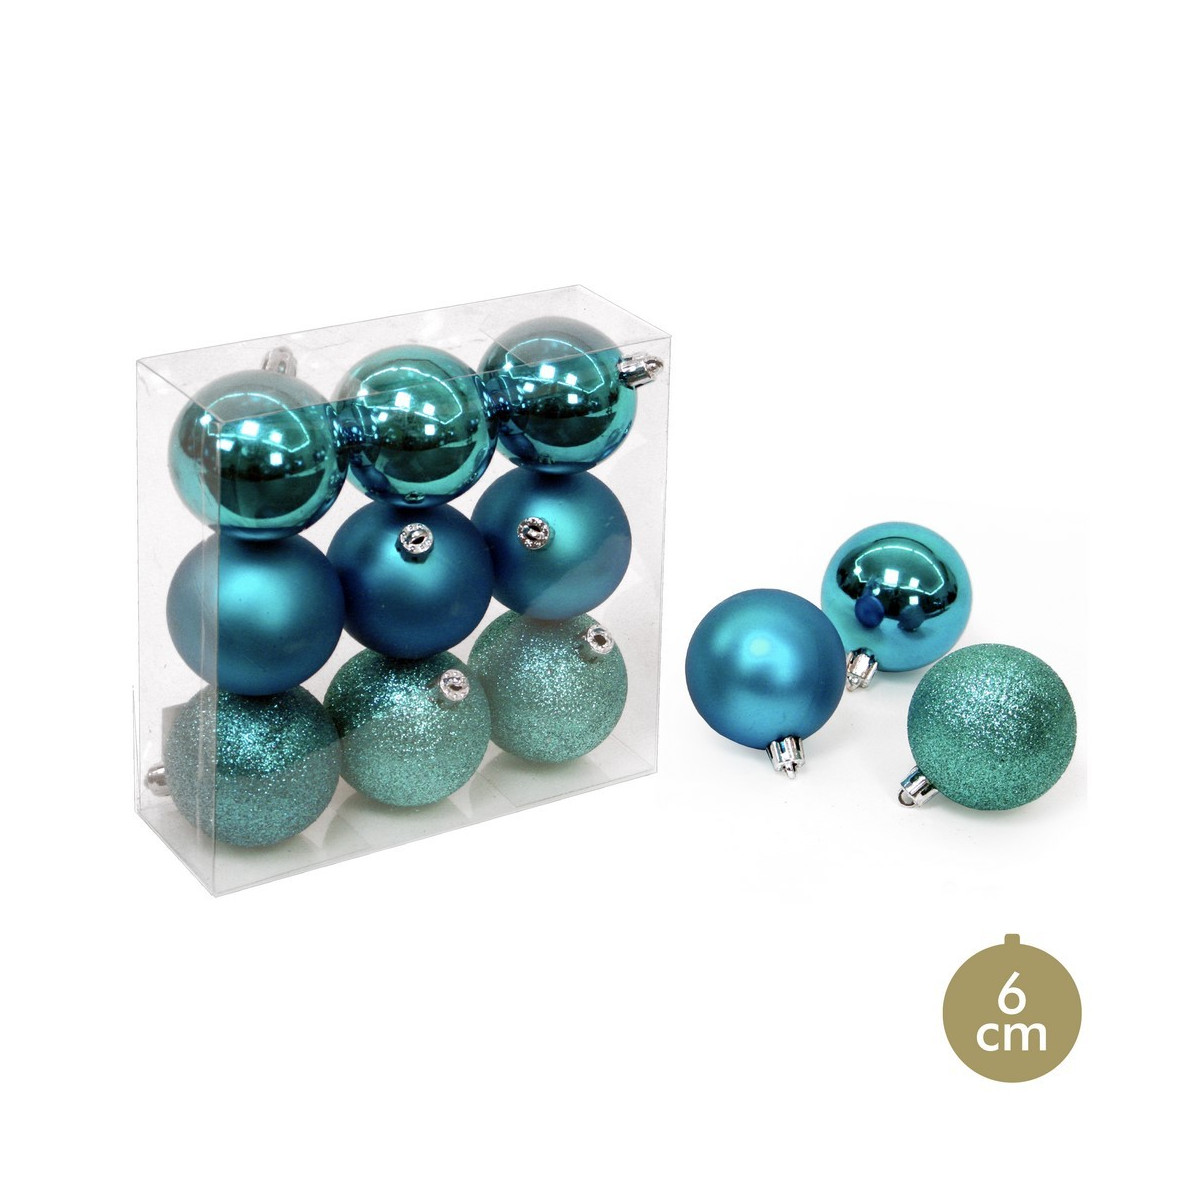 S 9 bola azul decoração de natal 6 x 6 x 6 cm